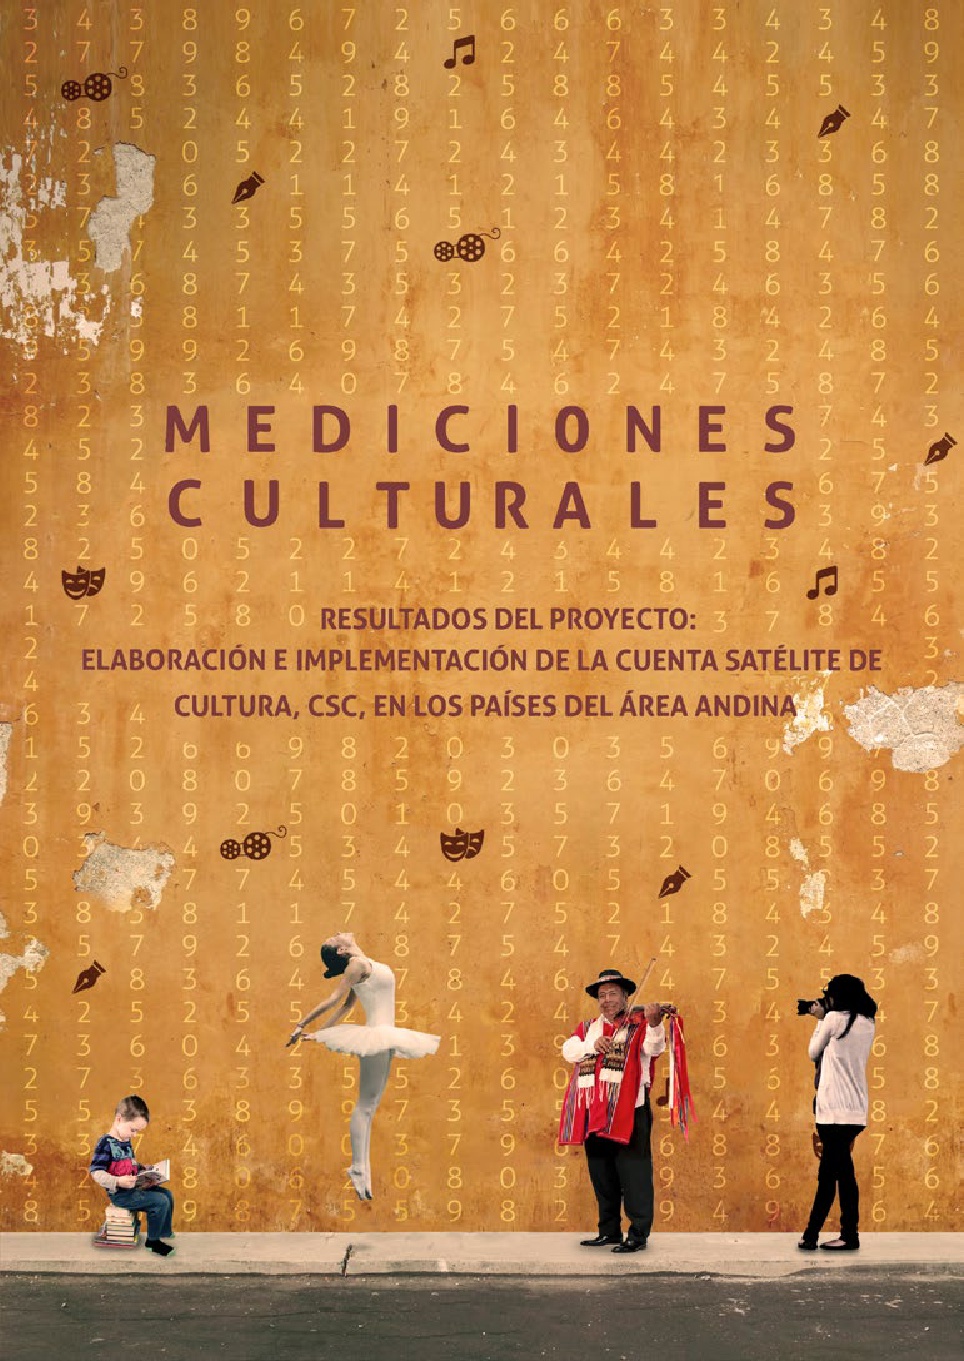 Mediciones culturales. Resultados del proyecto elaboración e implementación de la Cuenta Satélite de Cultura, CSC, en los países del área Andina